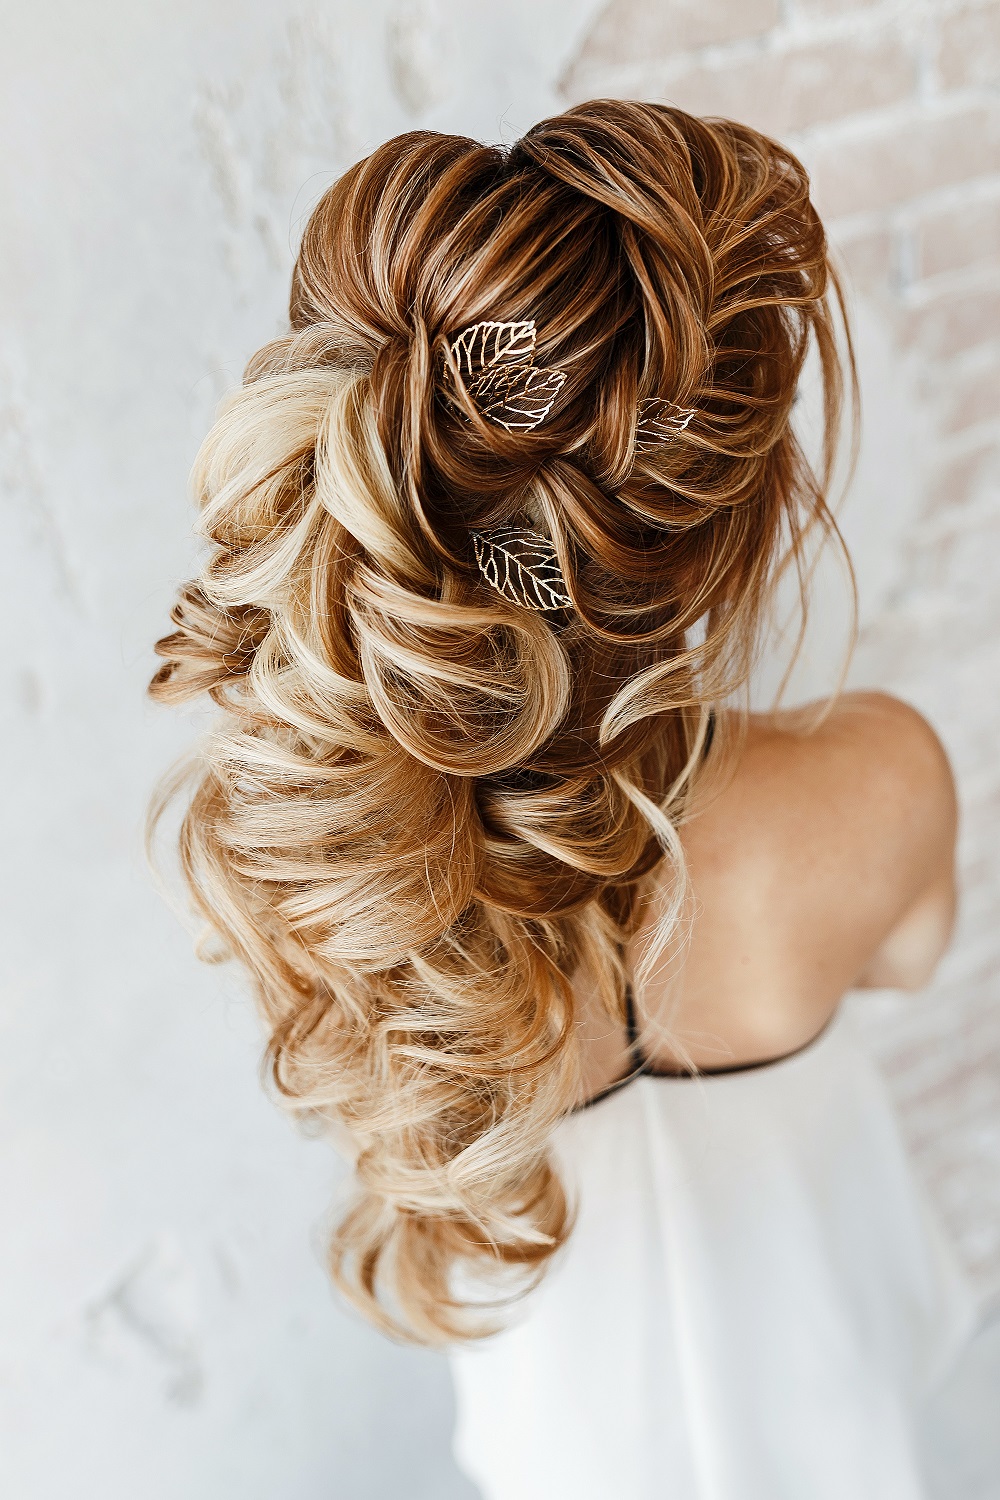 Piękne kaskadowe upięcie na długich blond włosach jako przykład fryzury na wesele.